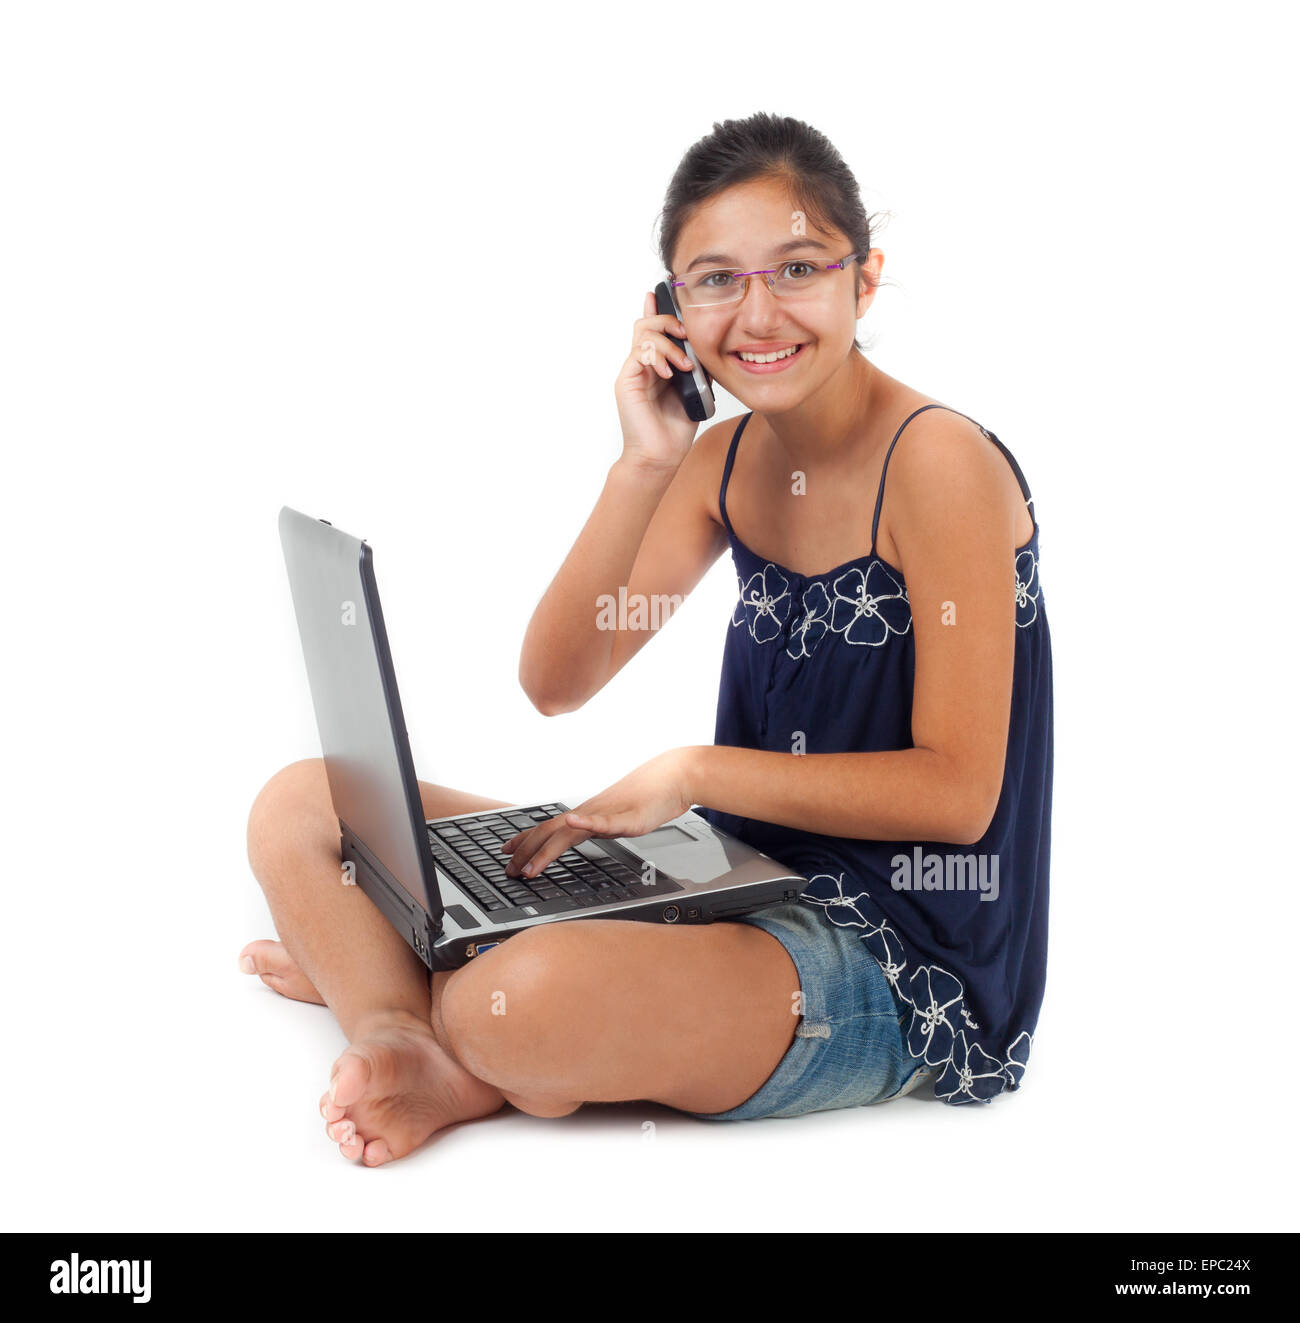 Adolescente mentre si parla al telefono con il notebook sulle gambe. Foto Stock